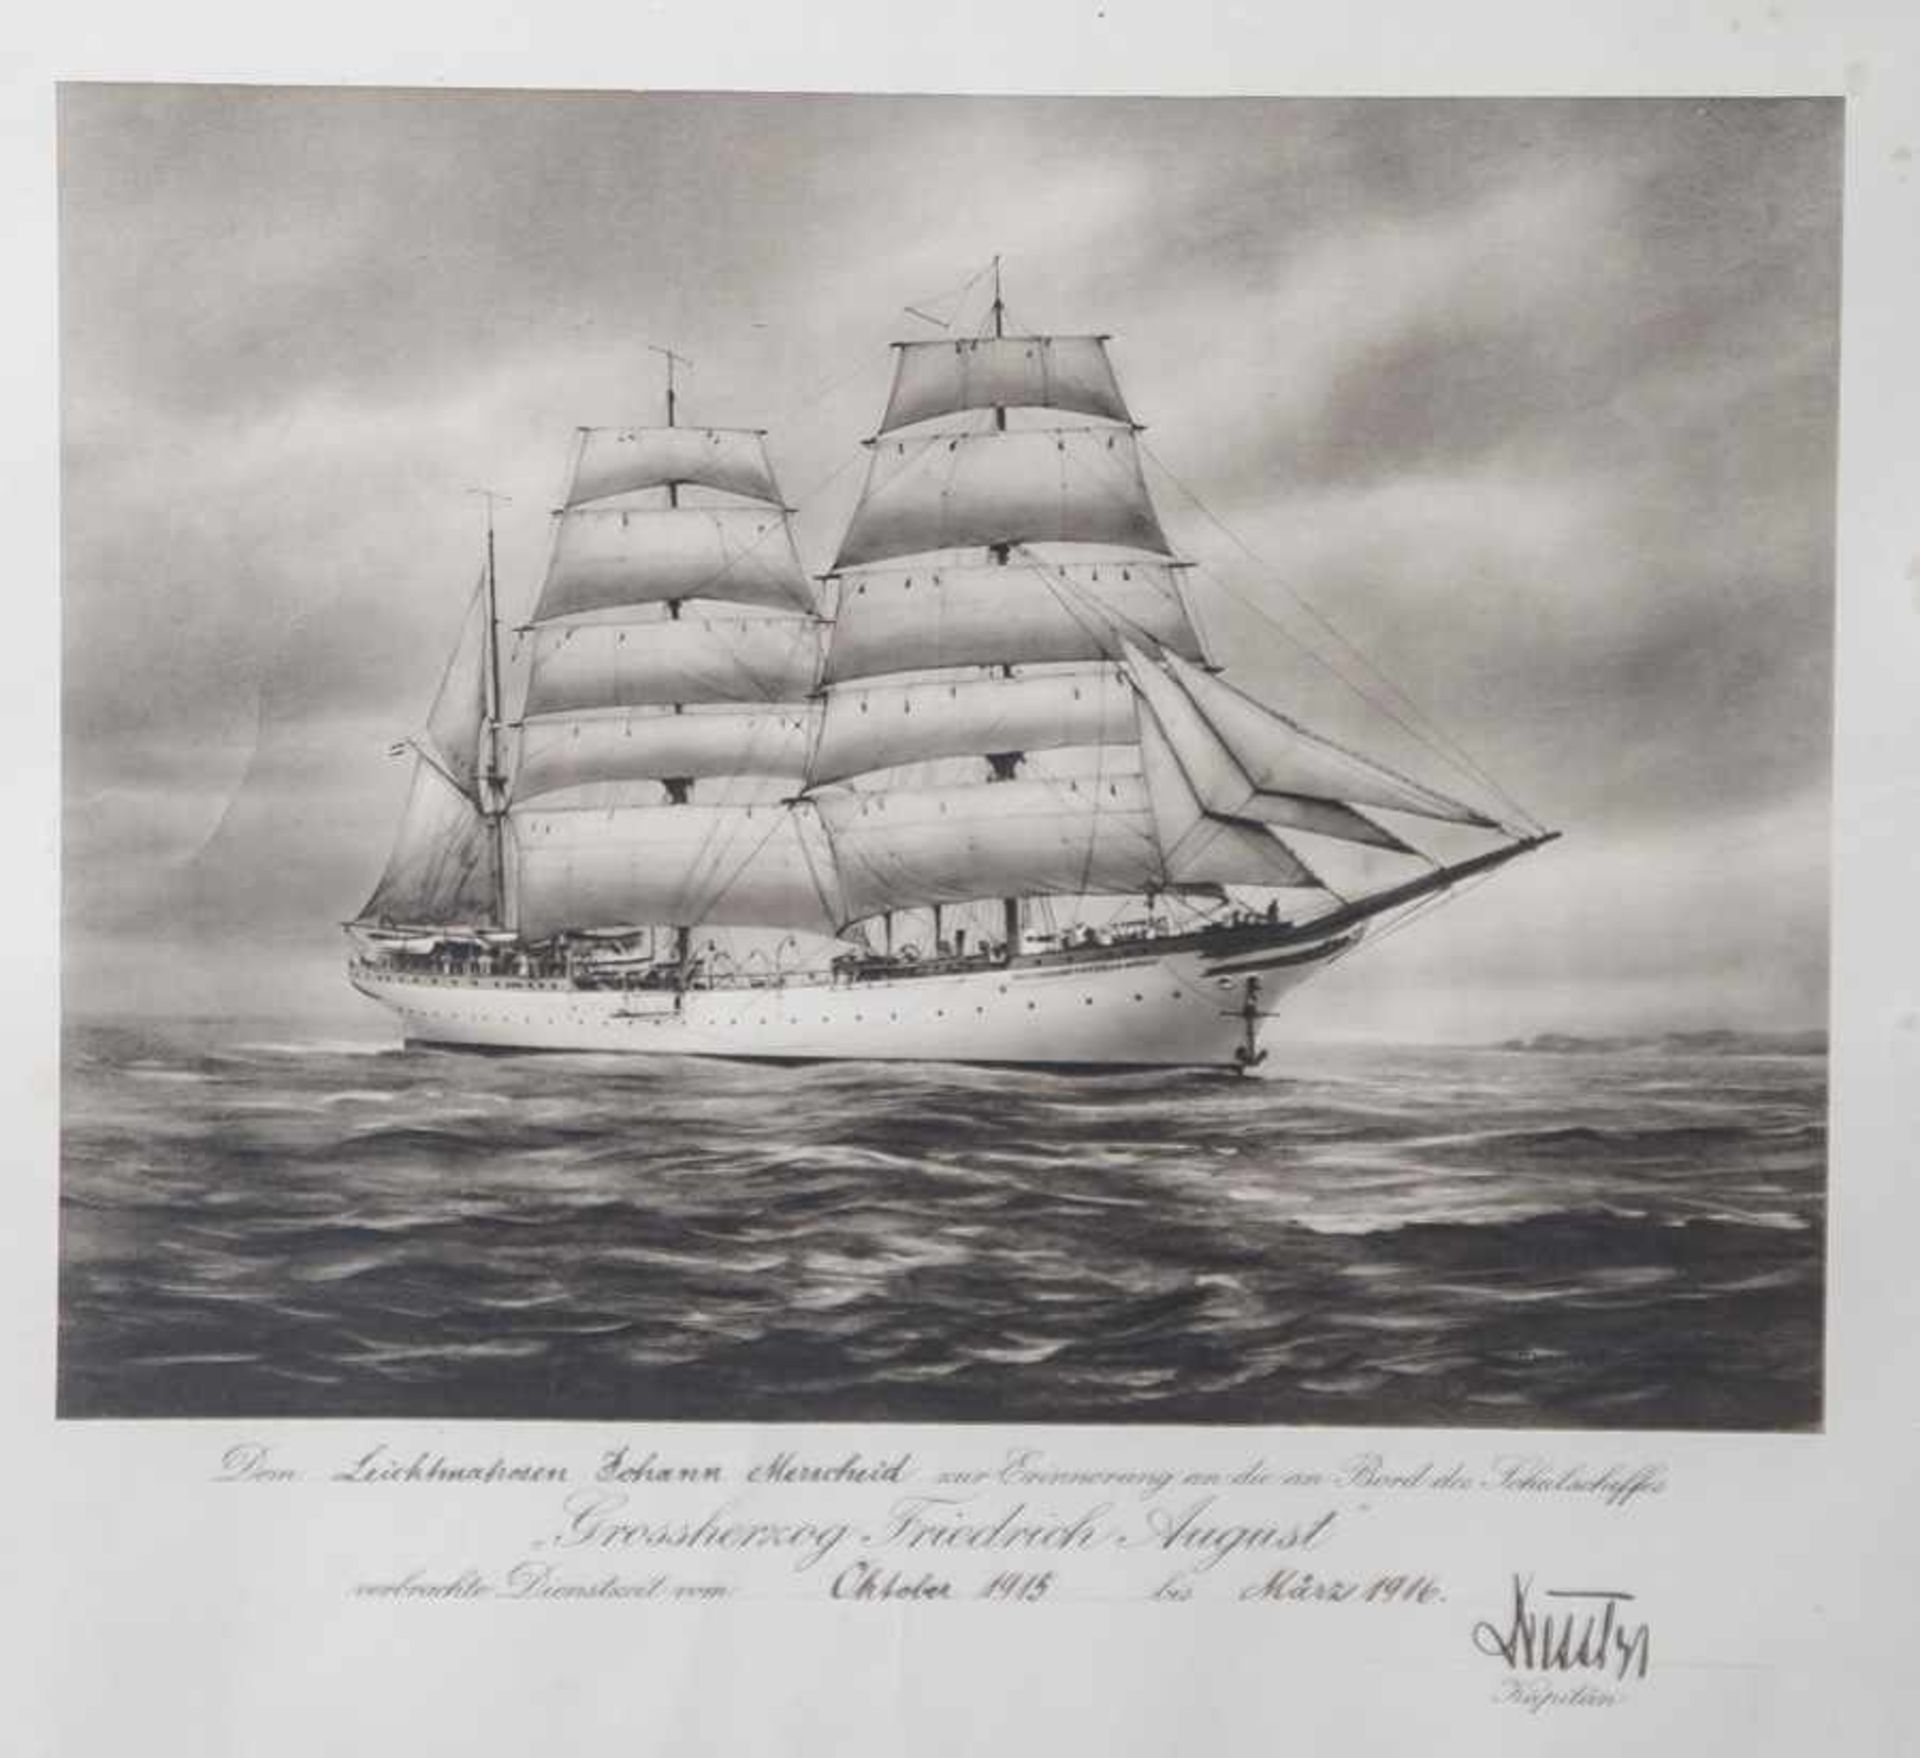 Reservistenandenken, Foto des Schulschiffes Großherzog Friedrich August, Bildunterschrift "Dem